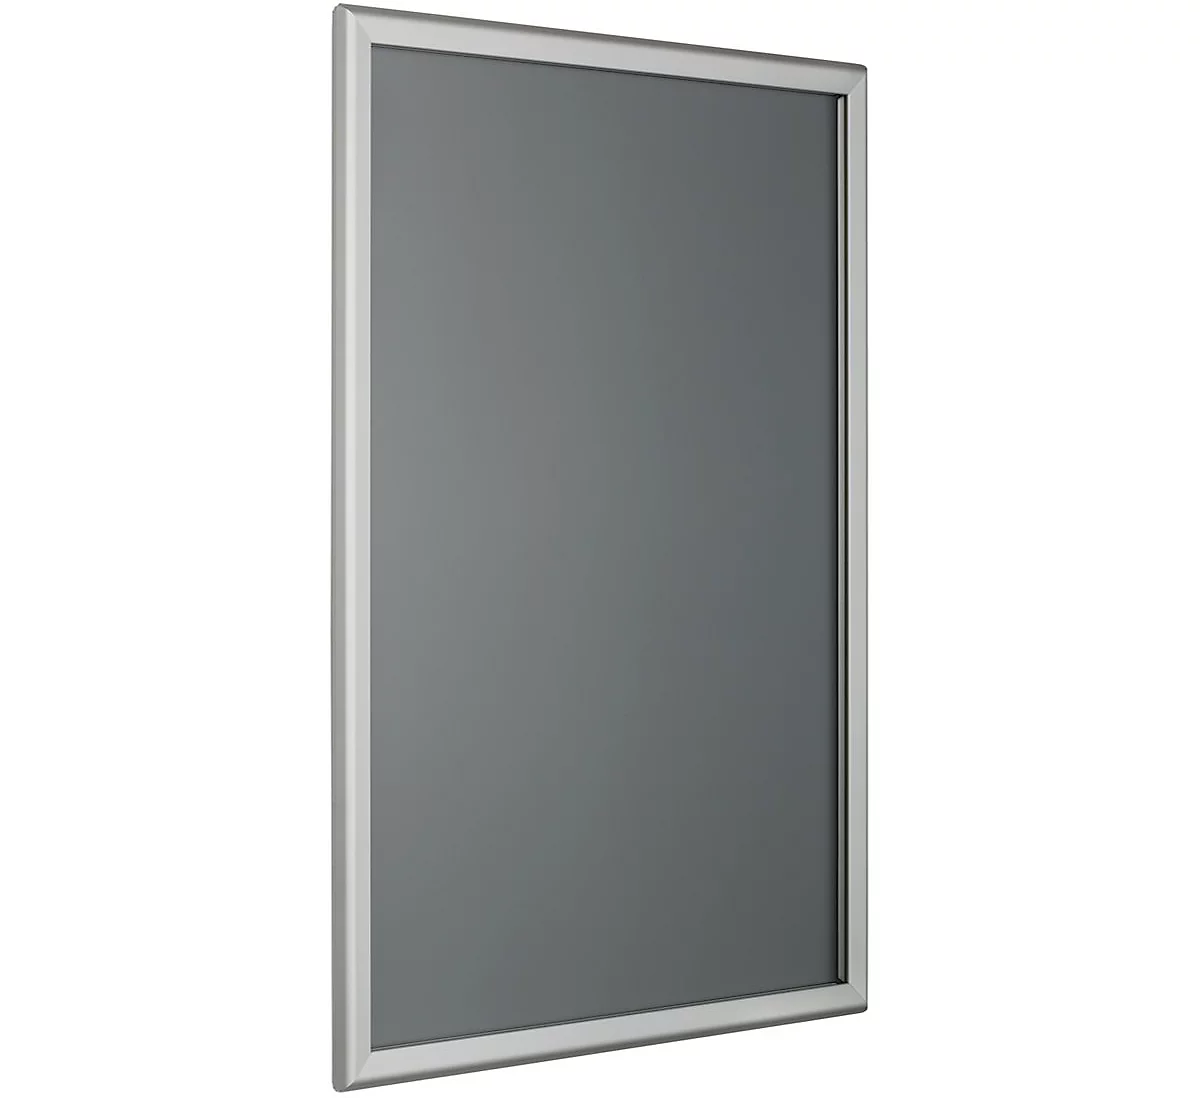 Marco intercambiable, esquinas angulares, perfil de aluminio anodizado plata, DIN A2, 420 x 594 mm